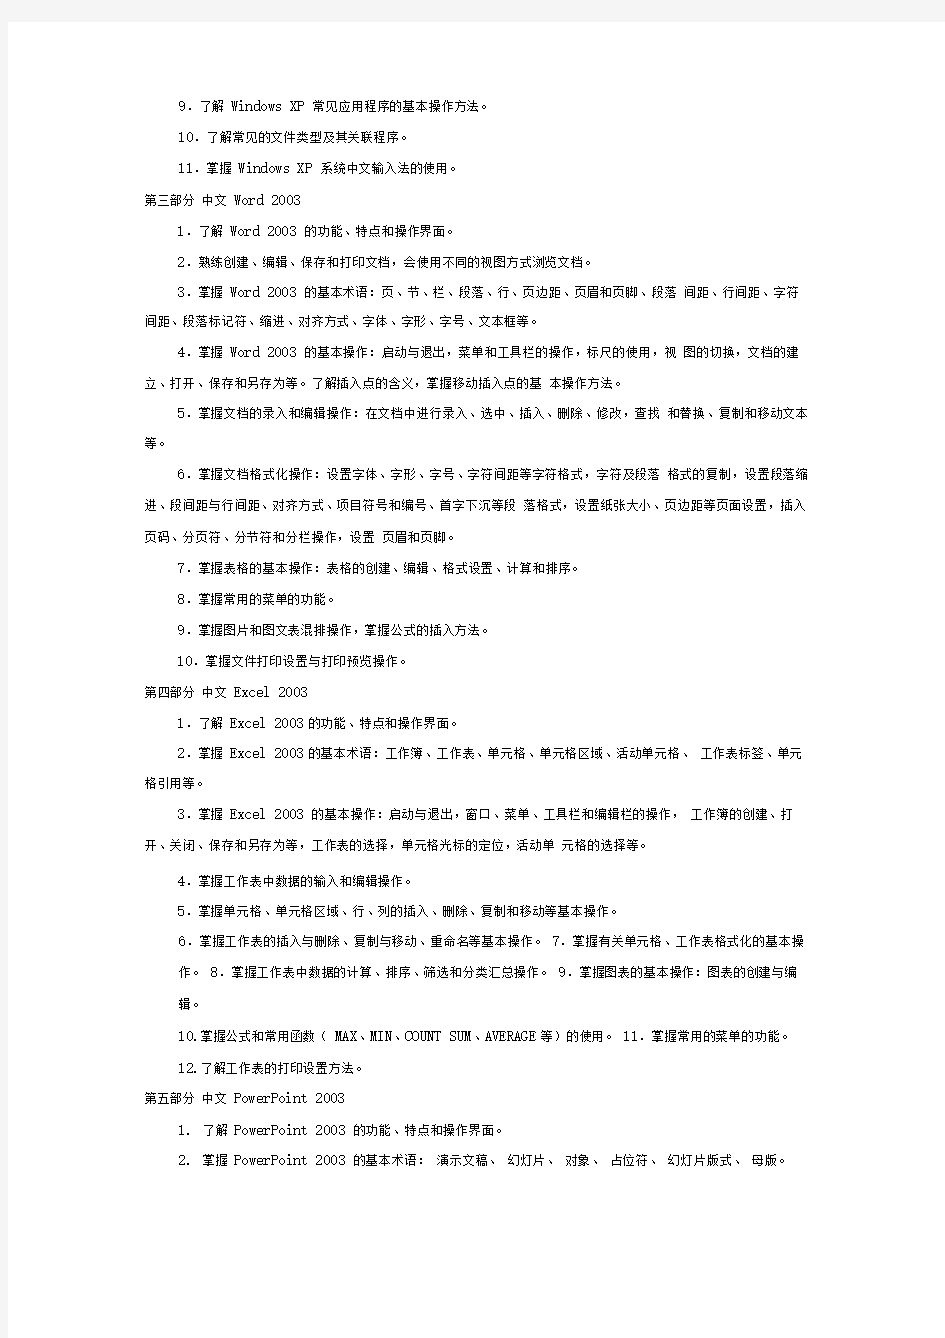 天津市高等学校春季招生统一考试计算机基础考试大纲